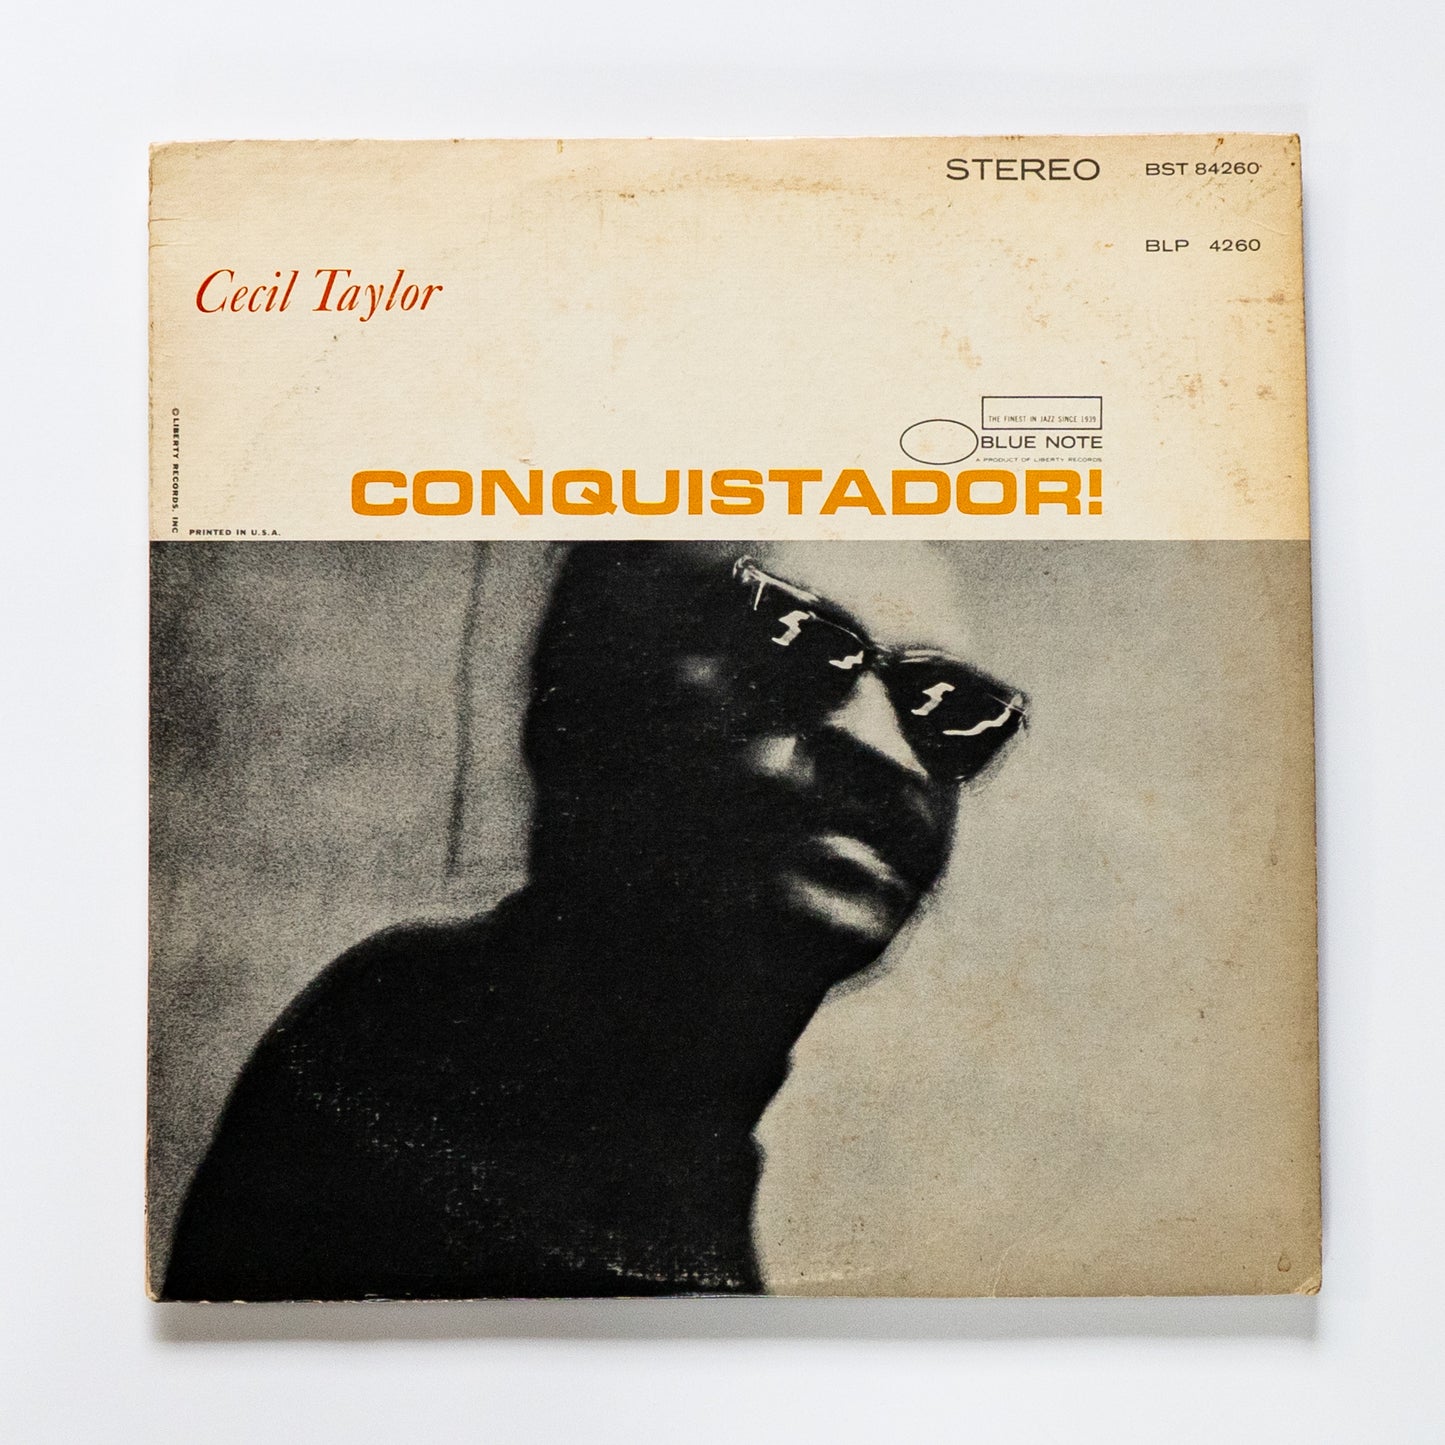 Cecil Taylor  / Conquistador!